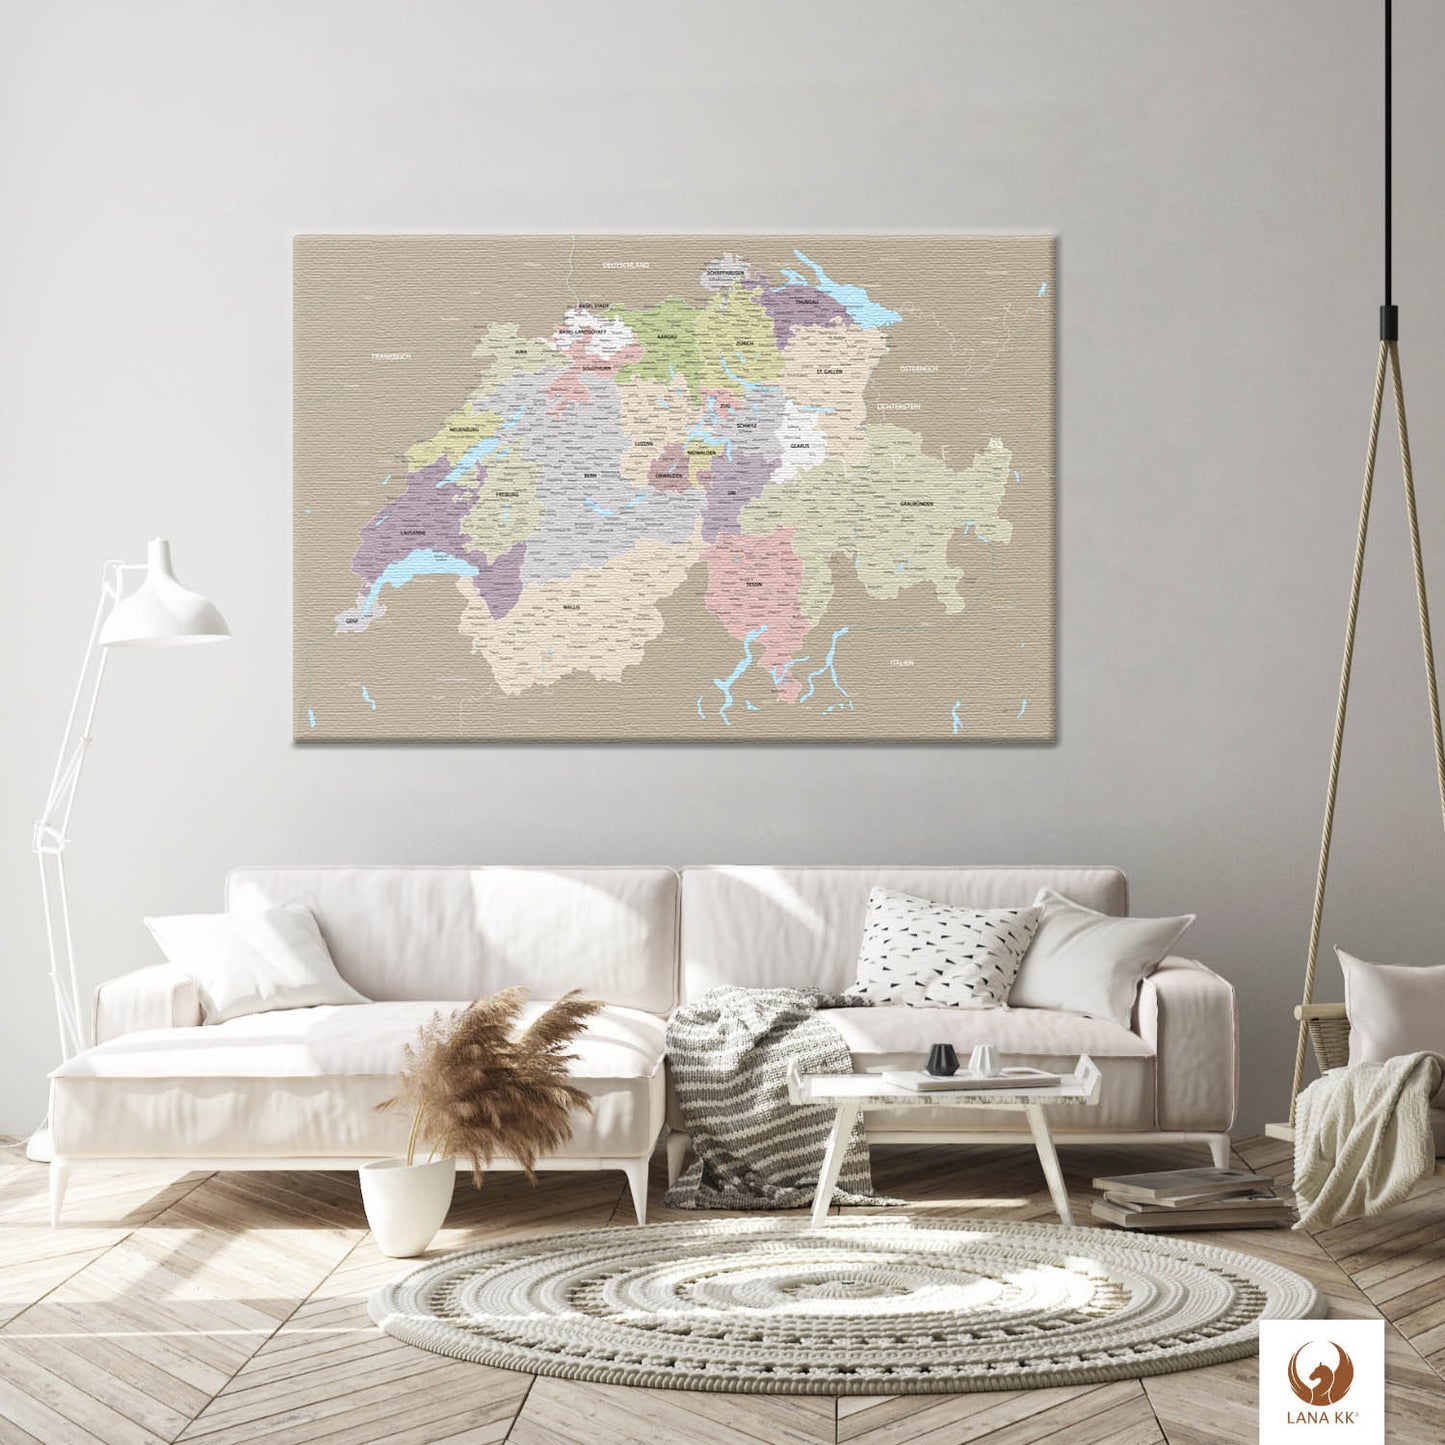 Die Welt als Zentrum Deiner Wohnung. Deine Schweizkarte Grau Sand für sich mit ihren ausgewogenen Farben ideal in Dein Wohnkonzept ein.